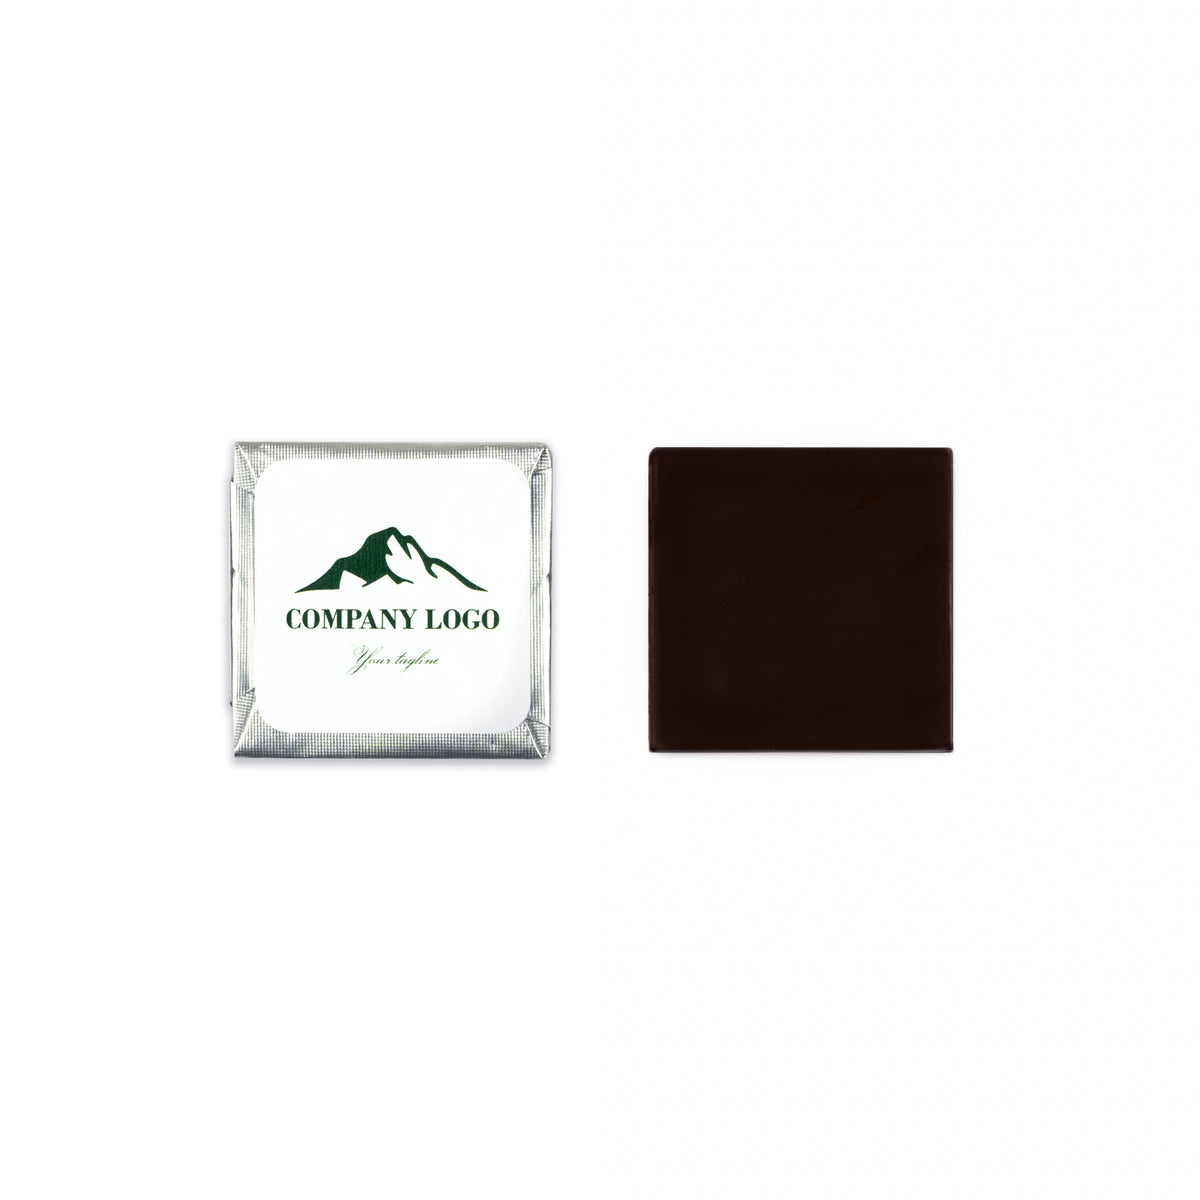 Carrés de chocolat garnis - Étiquette personnalisée